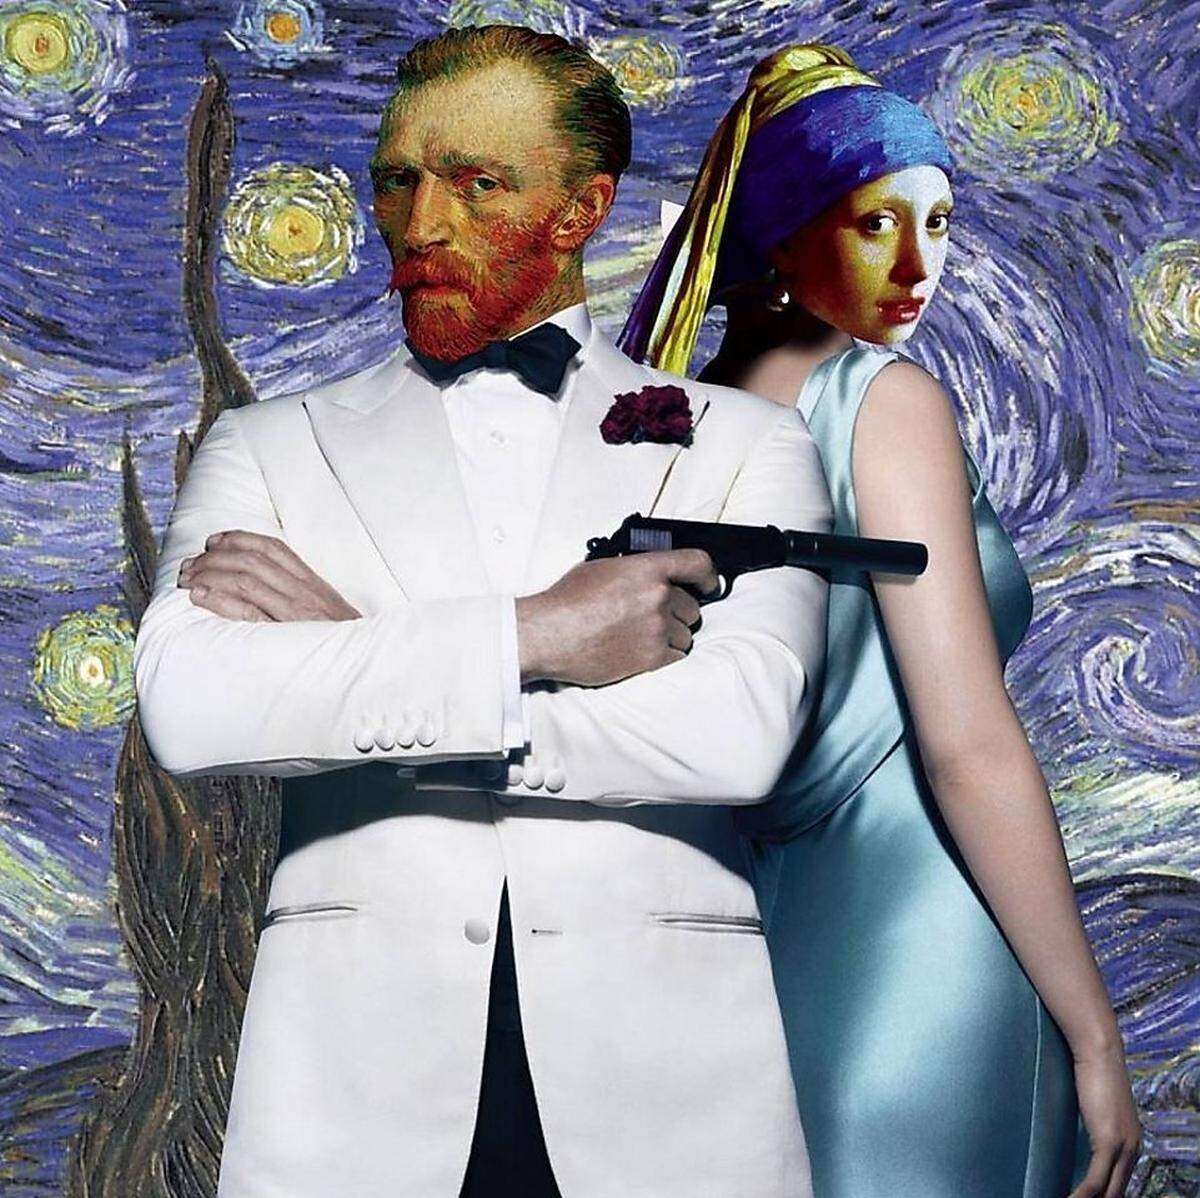 Die Collagen funktionieren freilich in beide Richtungen. So darf ein Van-Gogh-James-Bond auch vor der "Sternennacht" des Malers posieren - mit dem Mädchen mit dem Perlenohrring als Bond Girl.